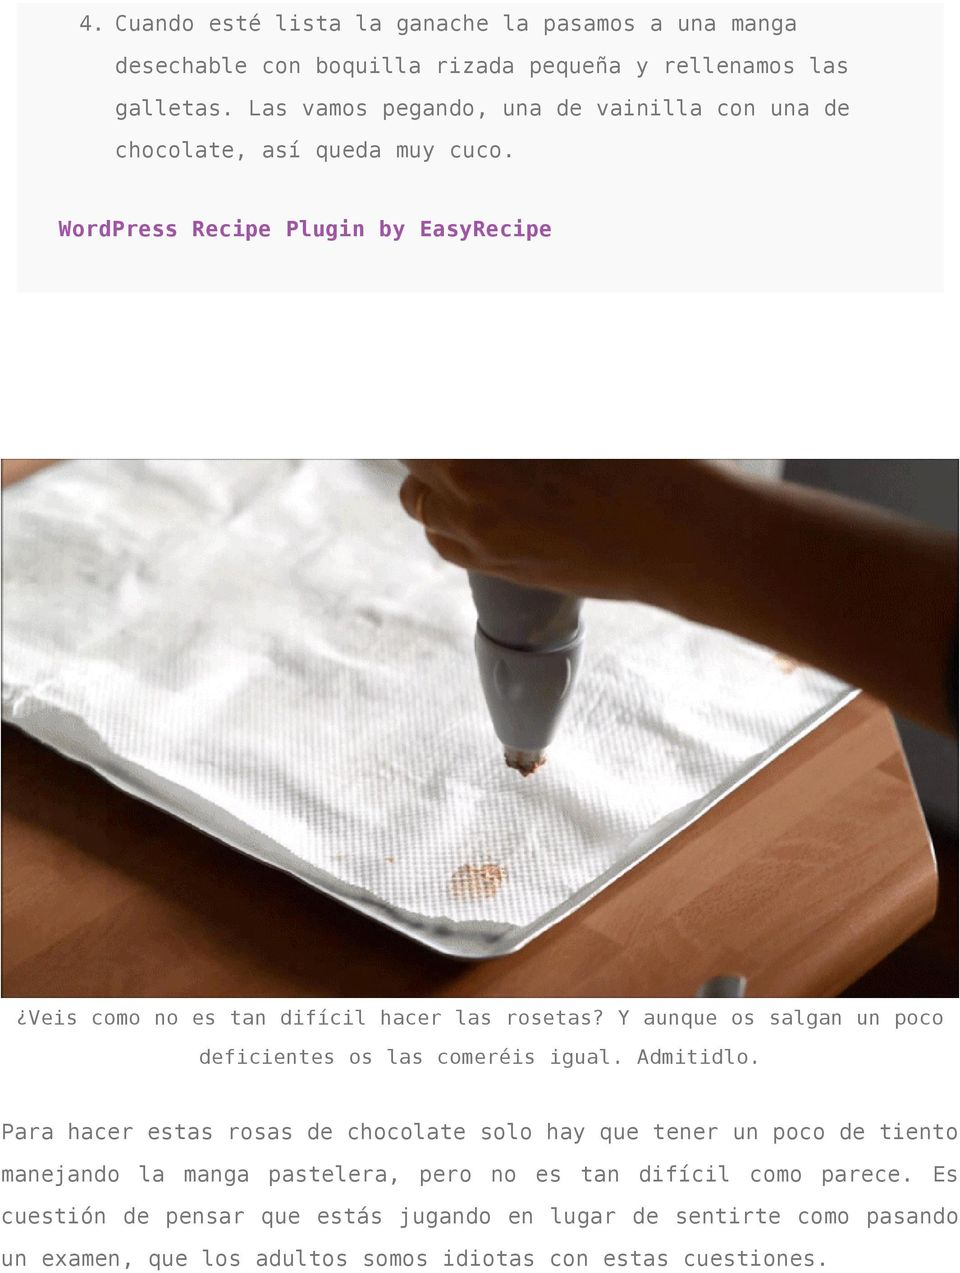 WordPress Recipe Plugin by EasyRecipe Veis como no es tan difícil hacer las rosetas? Y aunque os salgan un poco deficientes os las comeréis igual. Admitidlo.